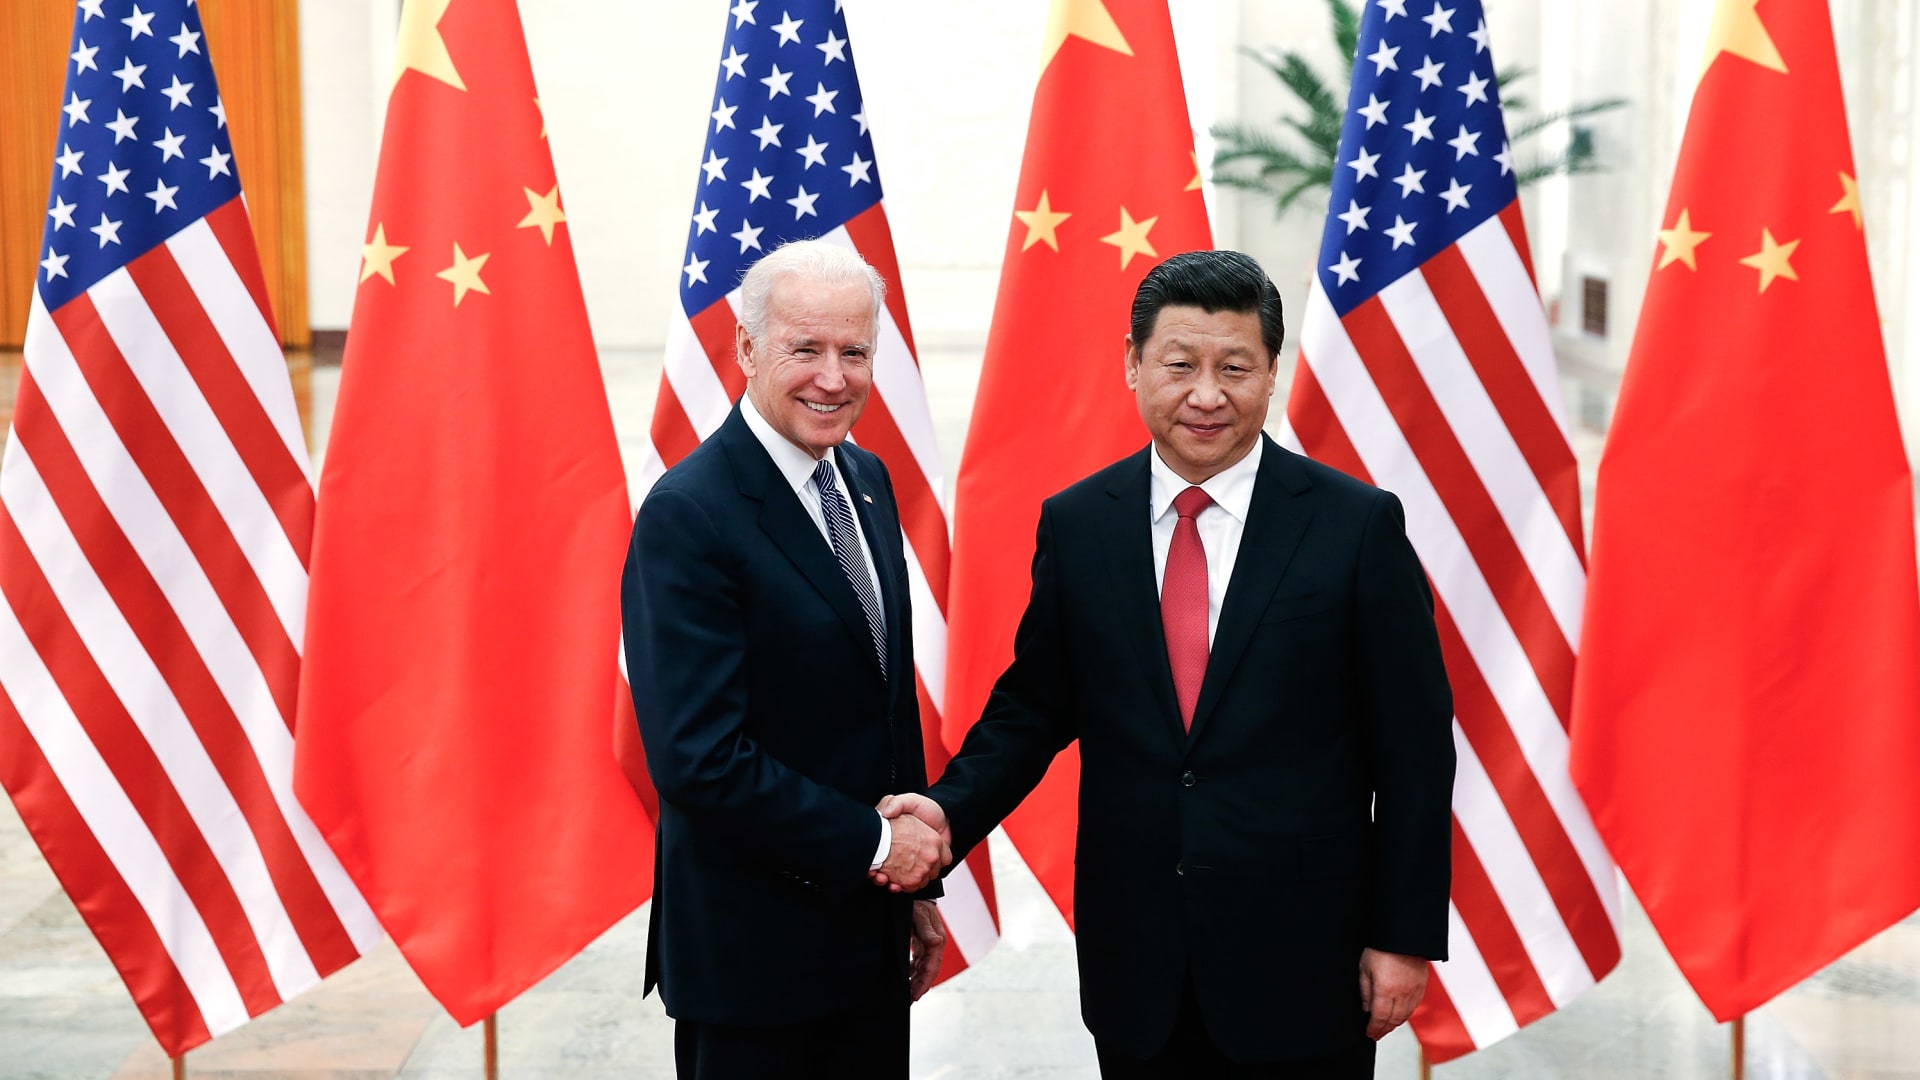 بايدن يطالب الرئيس الصيني بتغيير ملكية "تيك توك" أو حظره في أمريكا